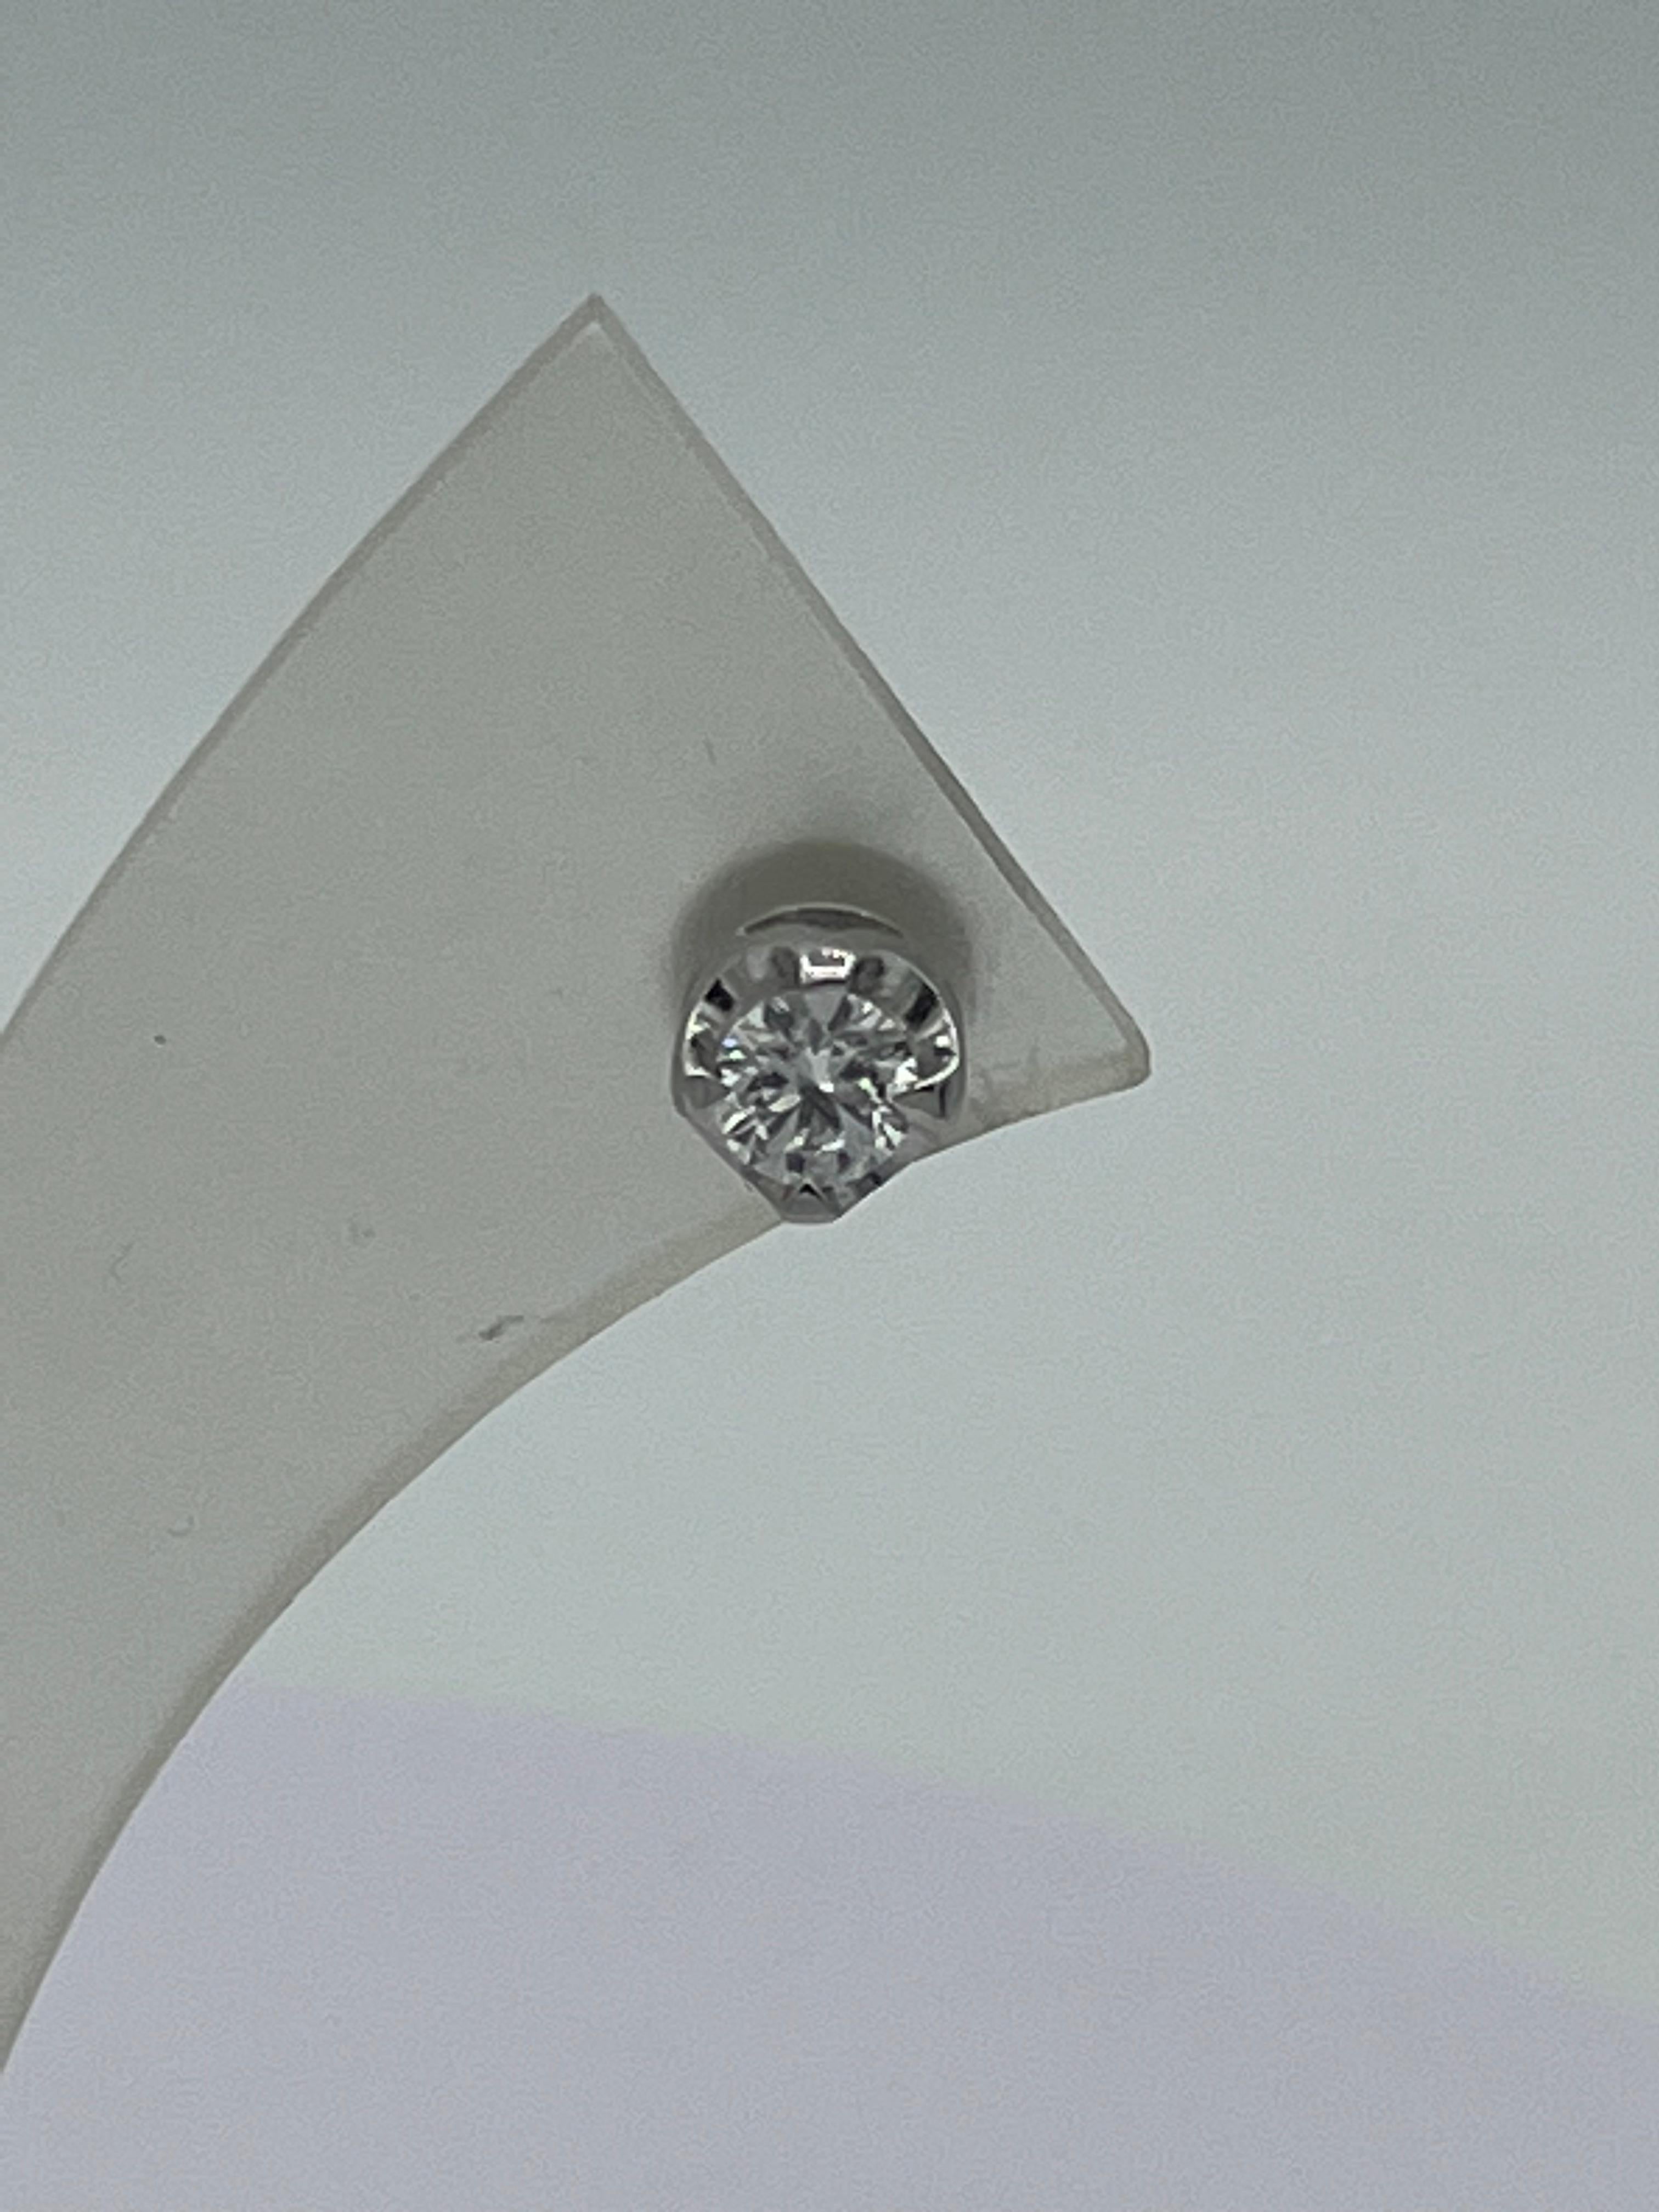 18 k Weißgold
2 Diamanten im Brillantschliff 
Qualität F/ si
2,6 Gramm
Durchmesser des Ohrrings 6 mm
das sind klassische Ohrringe